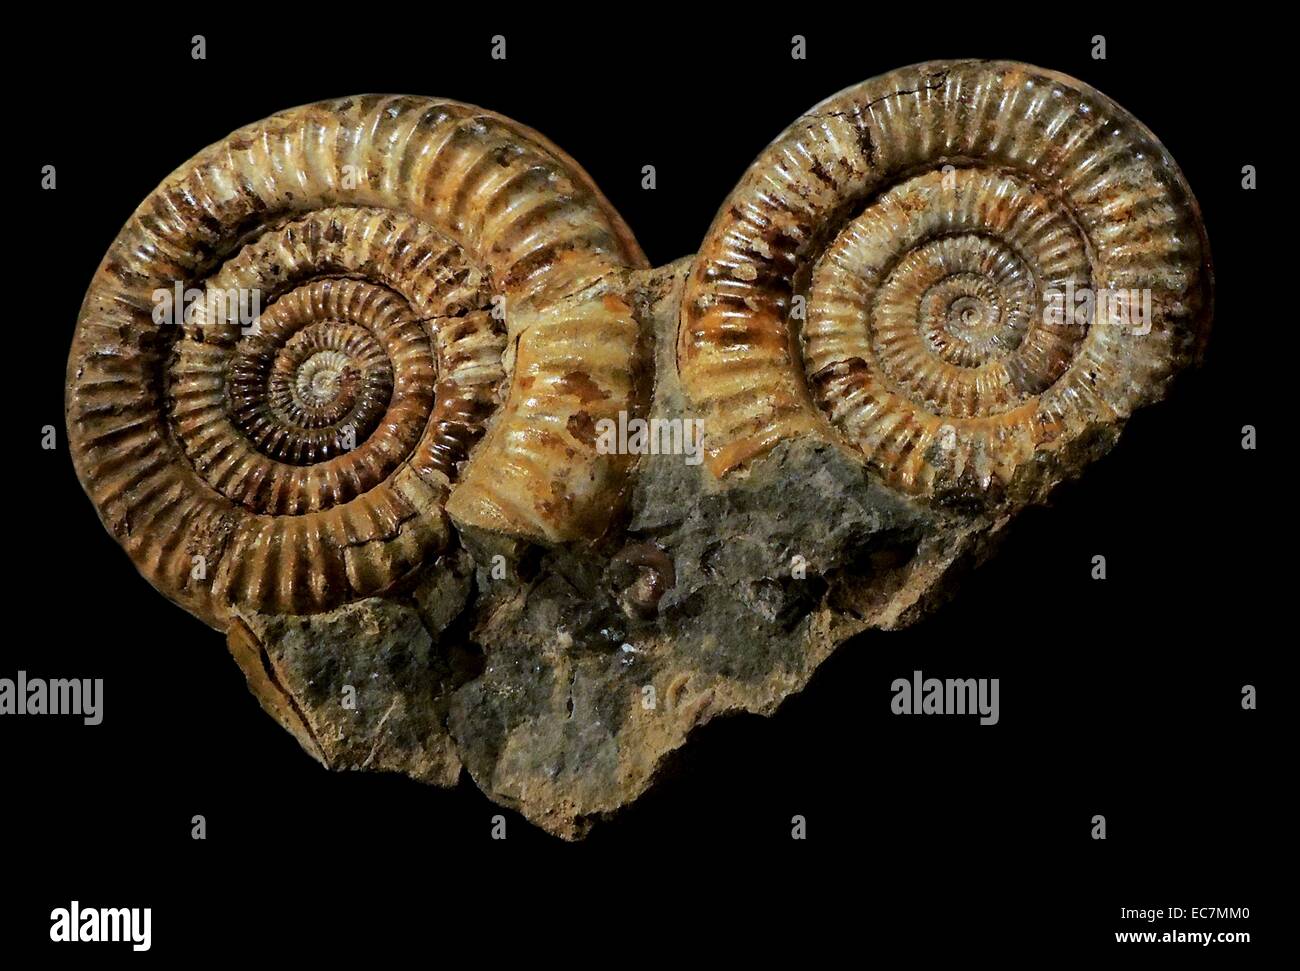 Muster für ein fossiler Ammonit, Metophioceras sp. Aus dem Bucklandi Zone gesammelt. Unteren Lias der frühen Jura, sinemurian Alter von Redcar, Cleveland (NE-England). Januar 1950 gesammelt. Stockfoto